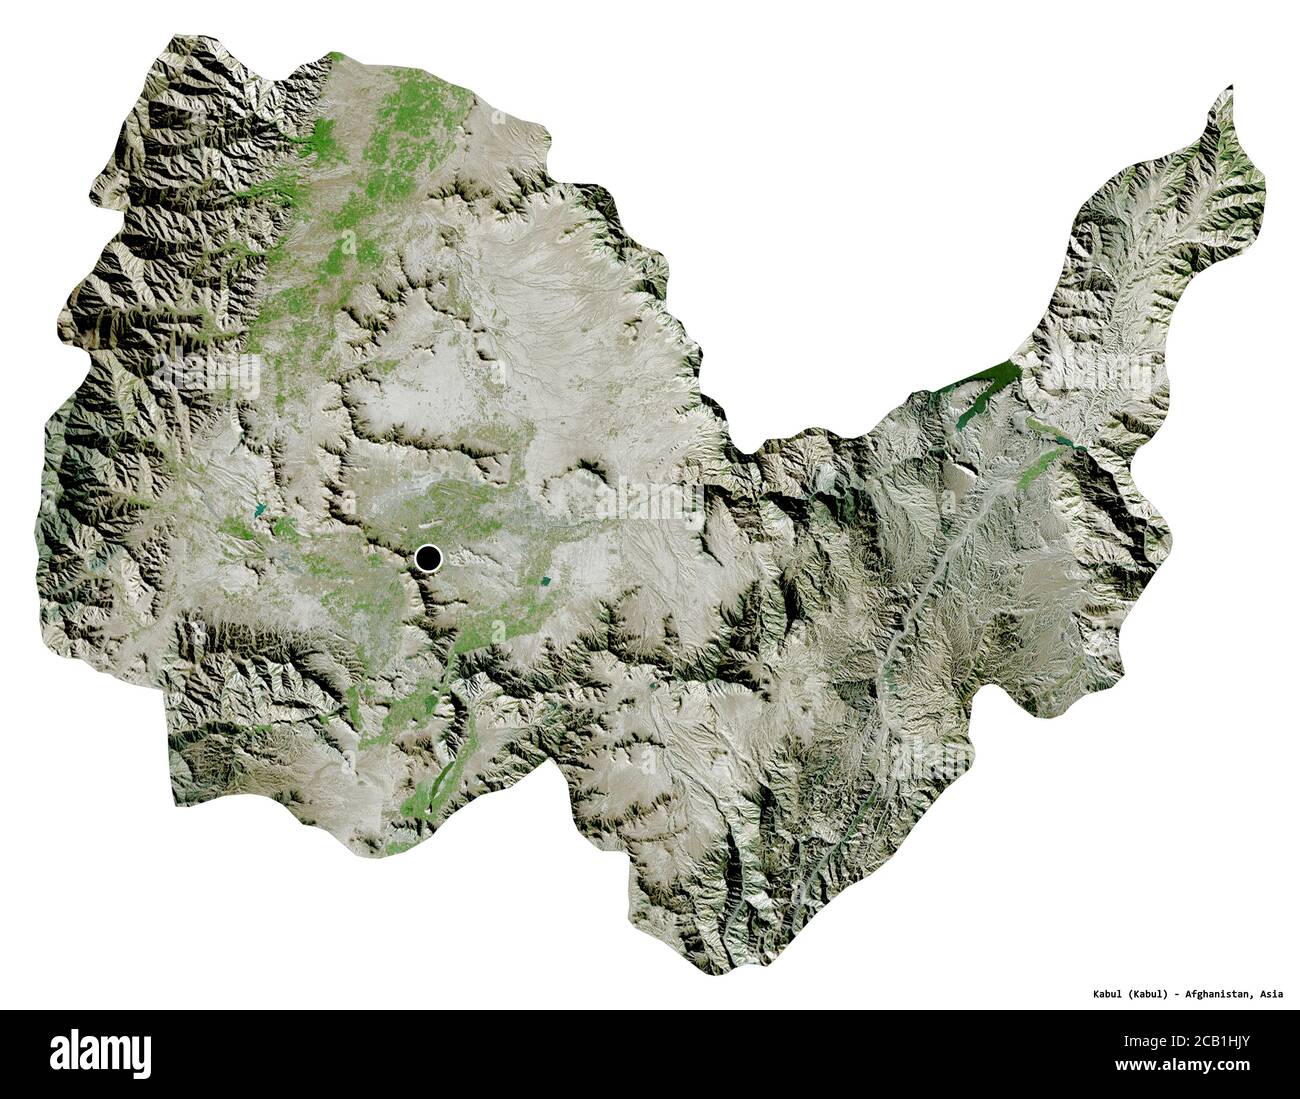 Forma di Kabul, provincia dell'Afghanistan, con la sua capitale isolata su sfondo bianco. Immagini satellitari. Rendering 3D Foto Stock